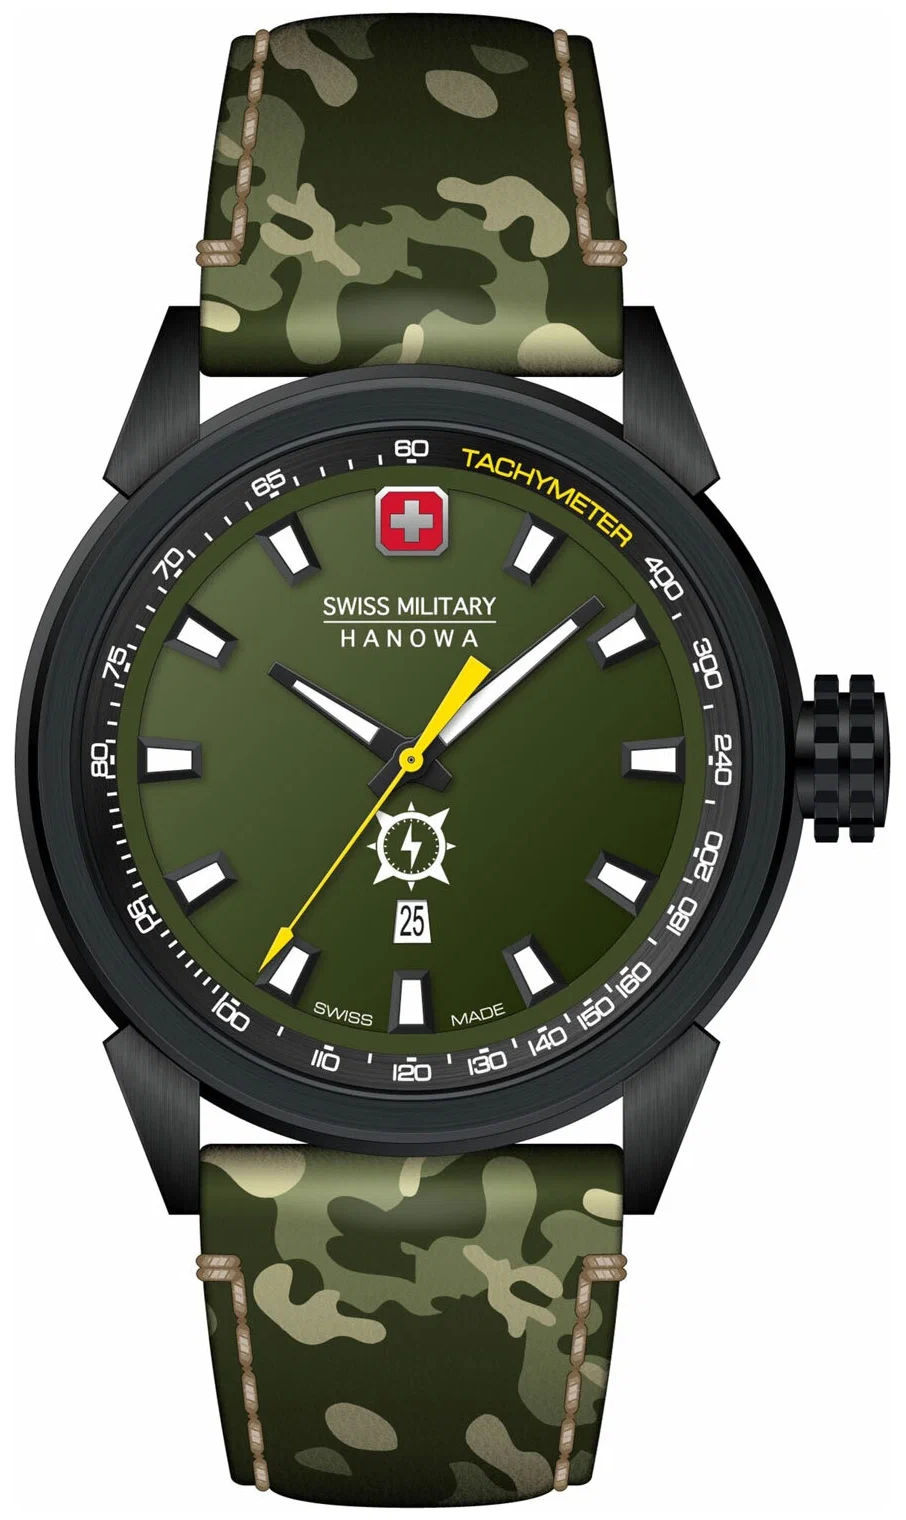  Swiss Military Hanowa SMWGB2100130